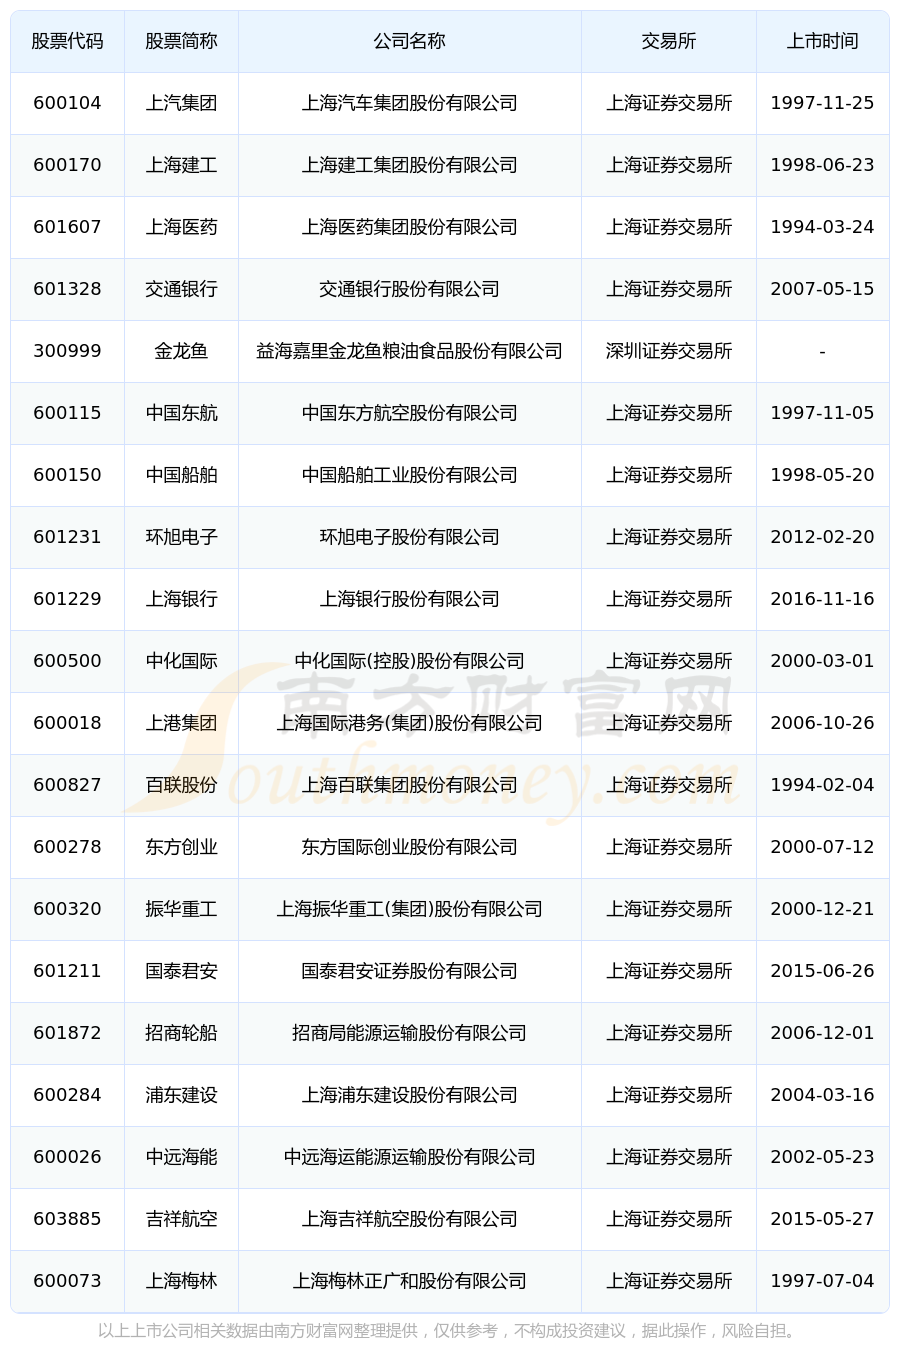 在上海浦东新区的上市公司中,业绩排名靠前的是:上汽集团(600104)财报